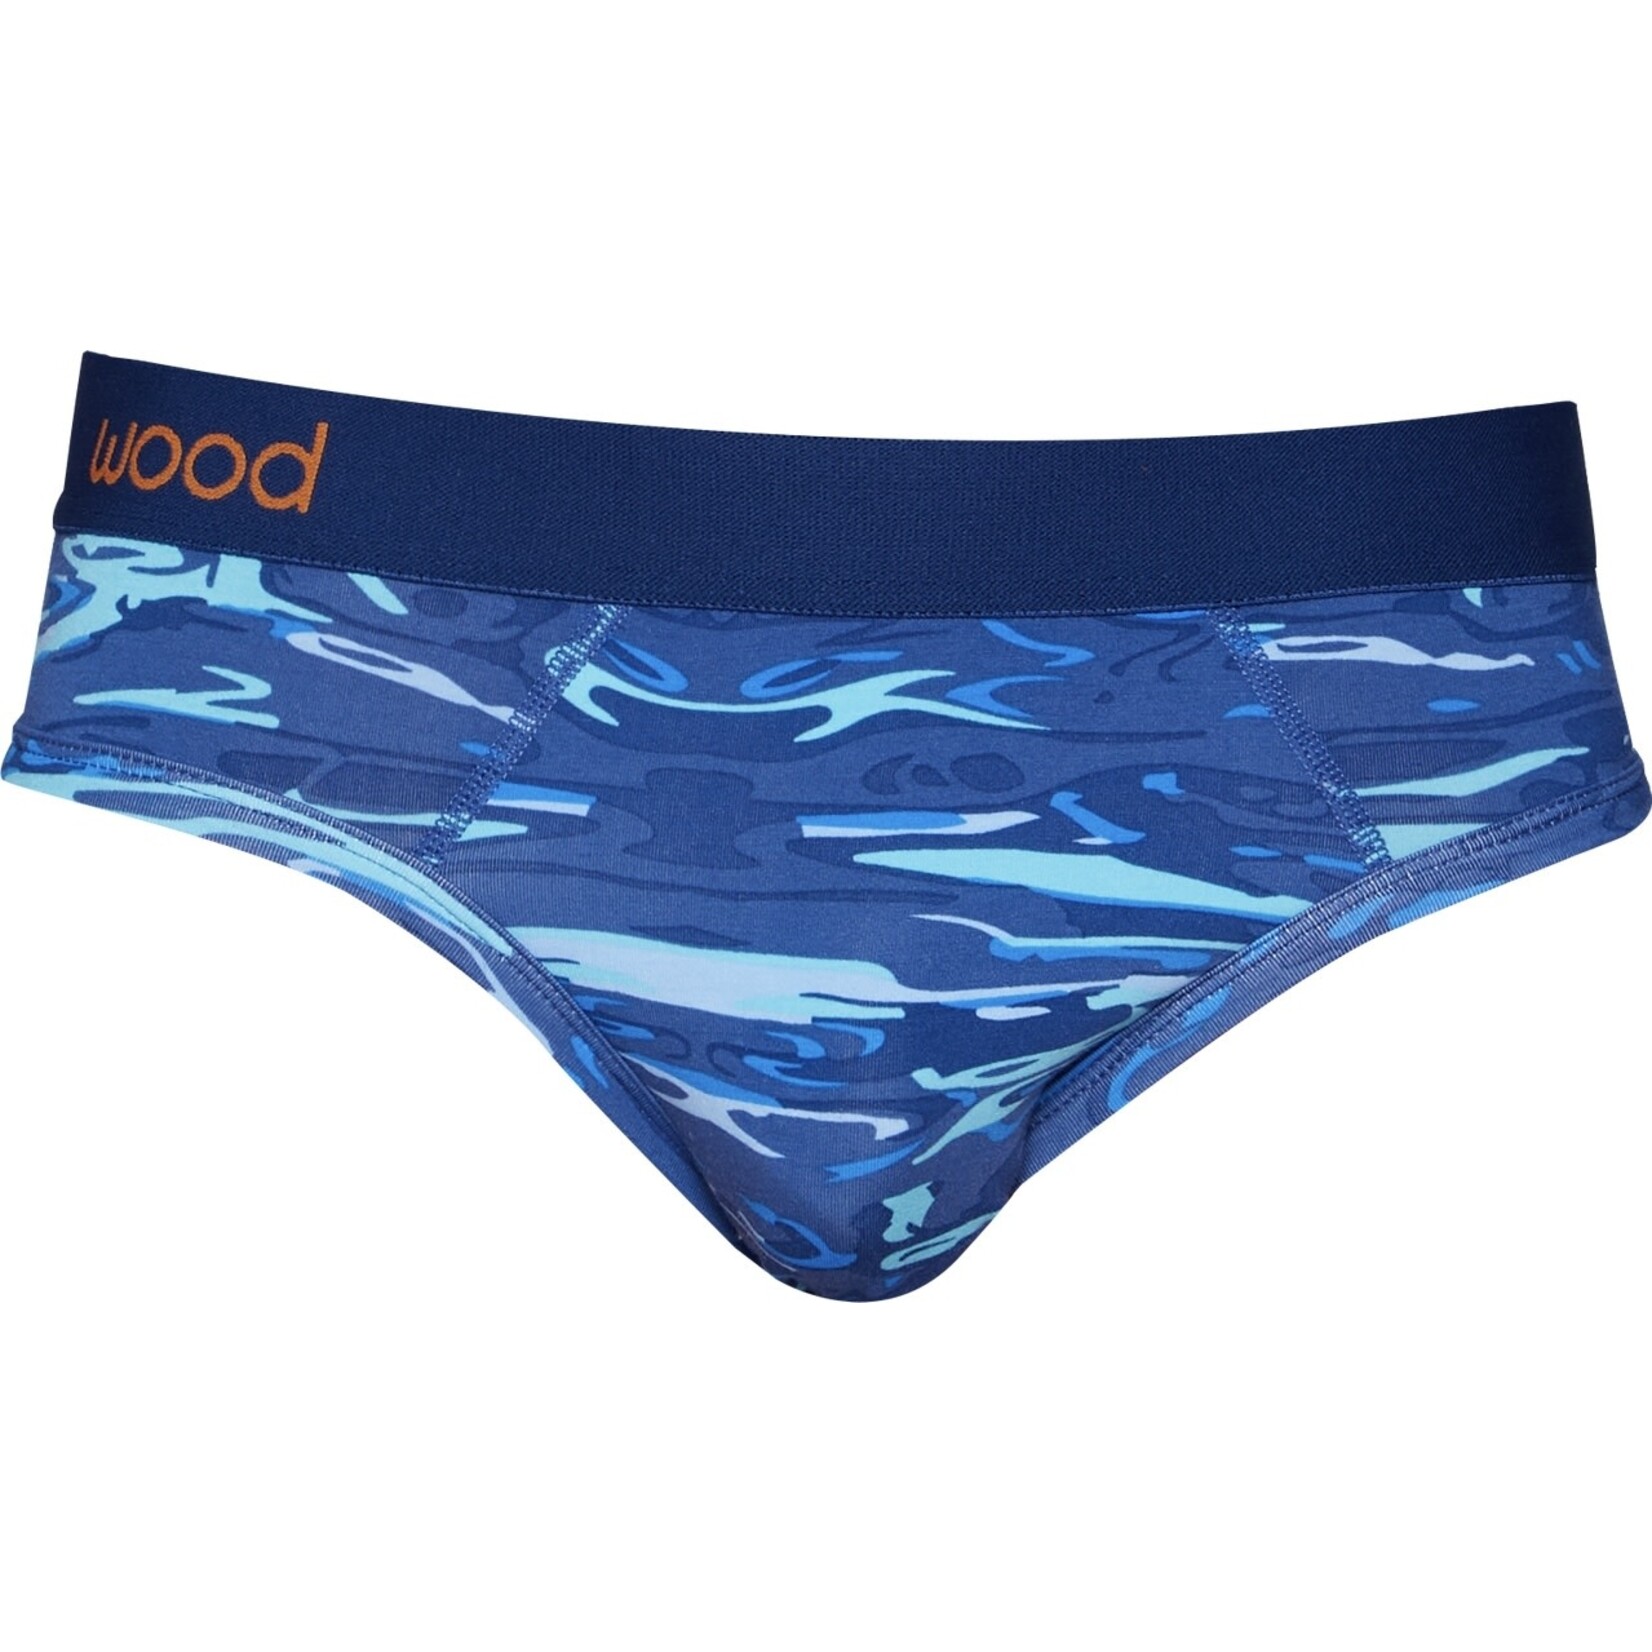 Wood Underwear Hip Brief in Blue Liquid